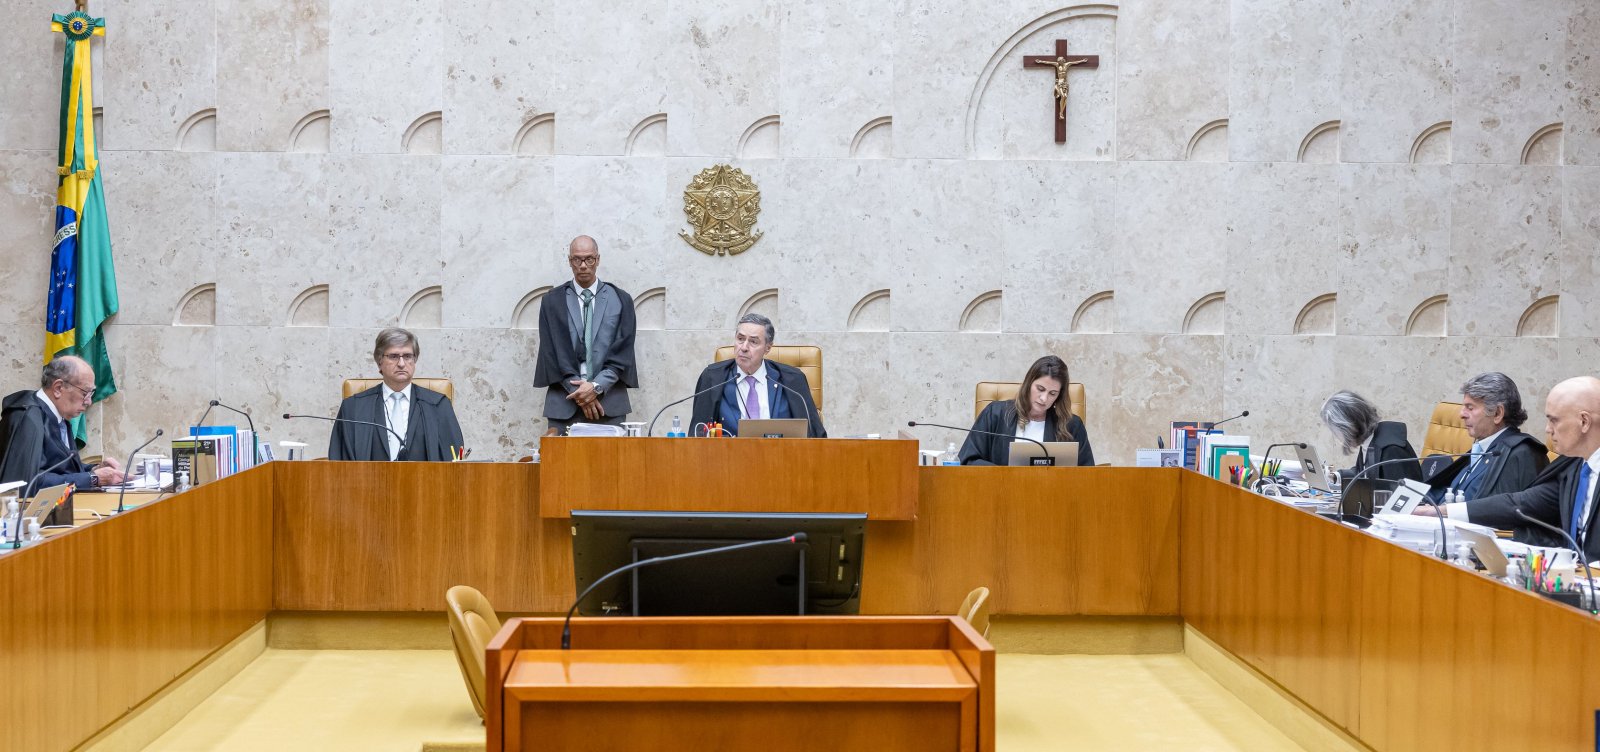 Moraes vota para invalidar pontos da Lei de Improbidade Administrativa; Gilmar pede vista